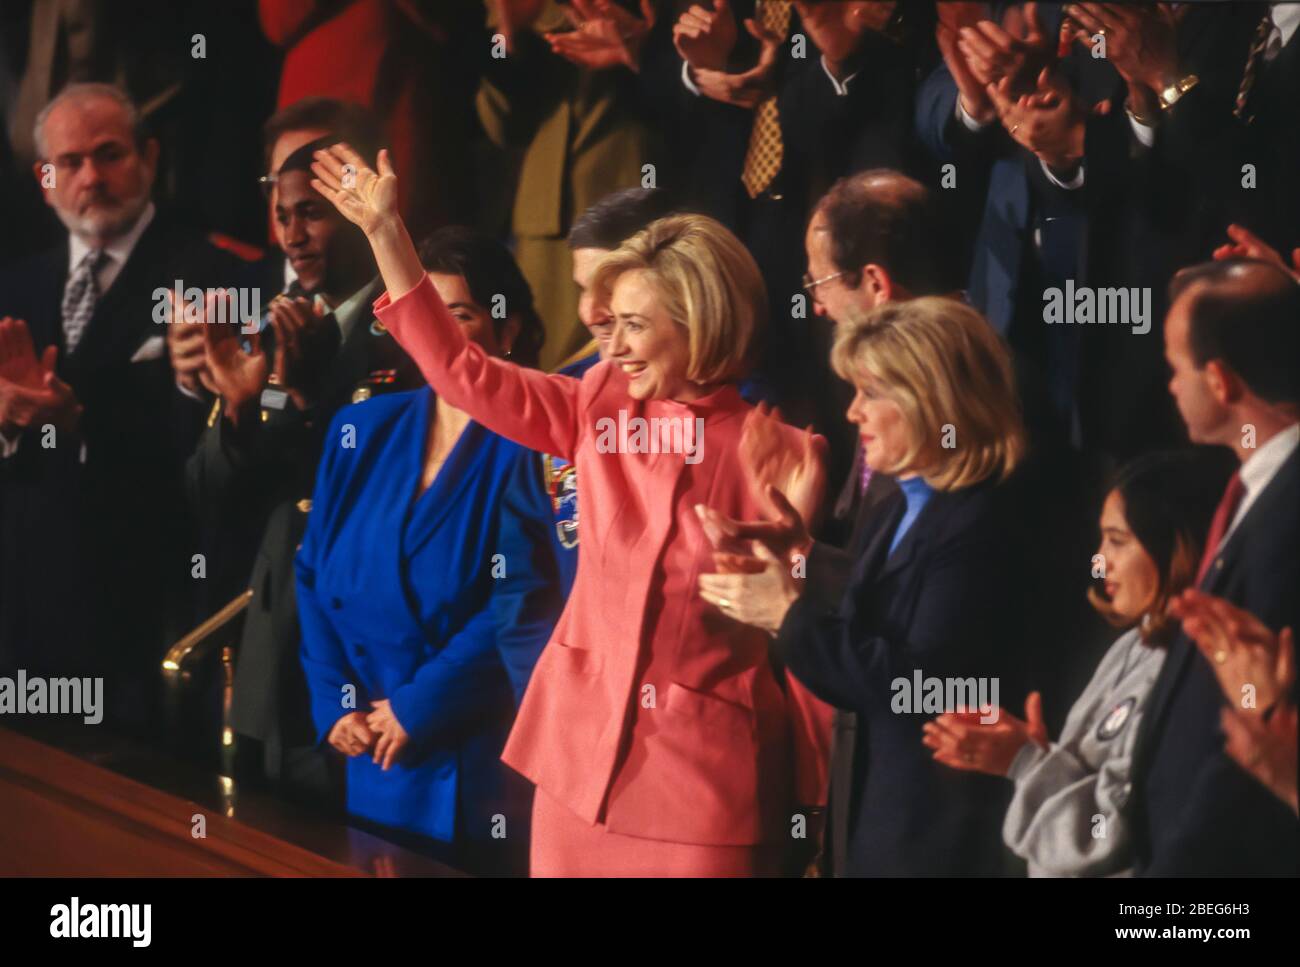 WASHINGTON, DC, USA, 27. JANUAR 1998: Hillary Clinton winkt während der Rede zur Lage der Union. Stockfoto